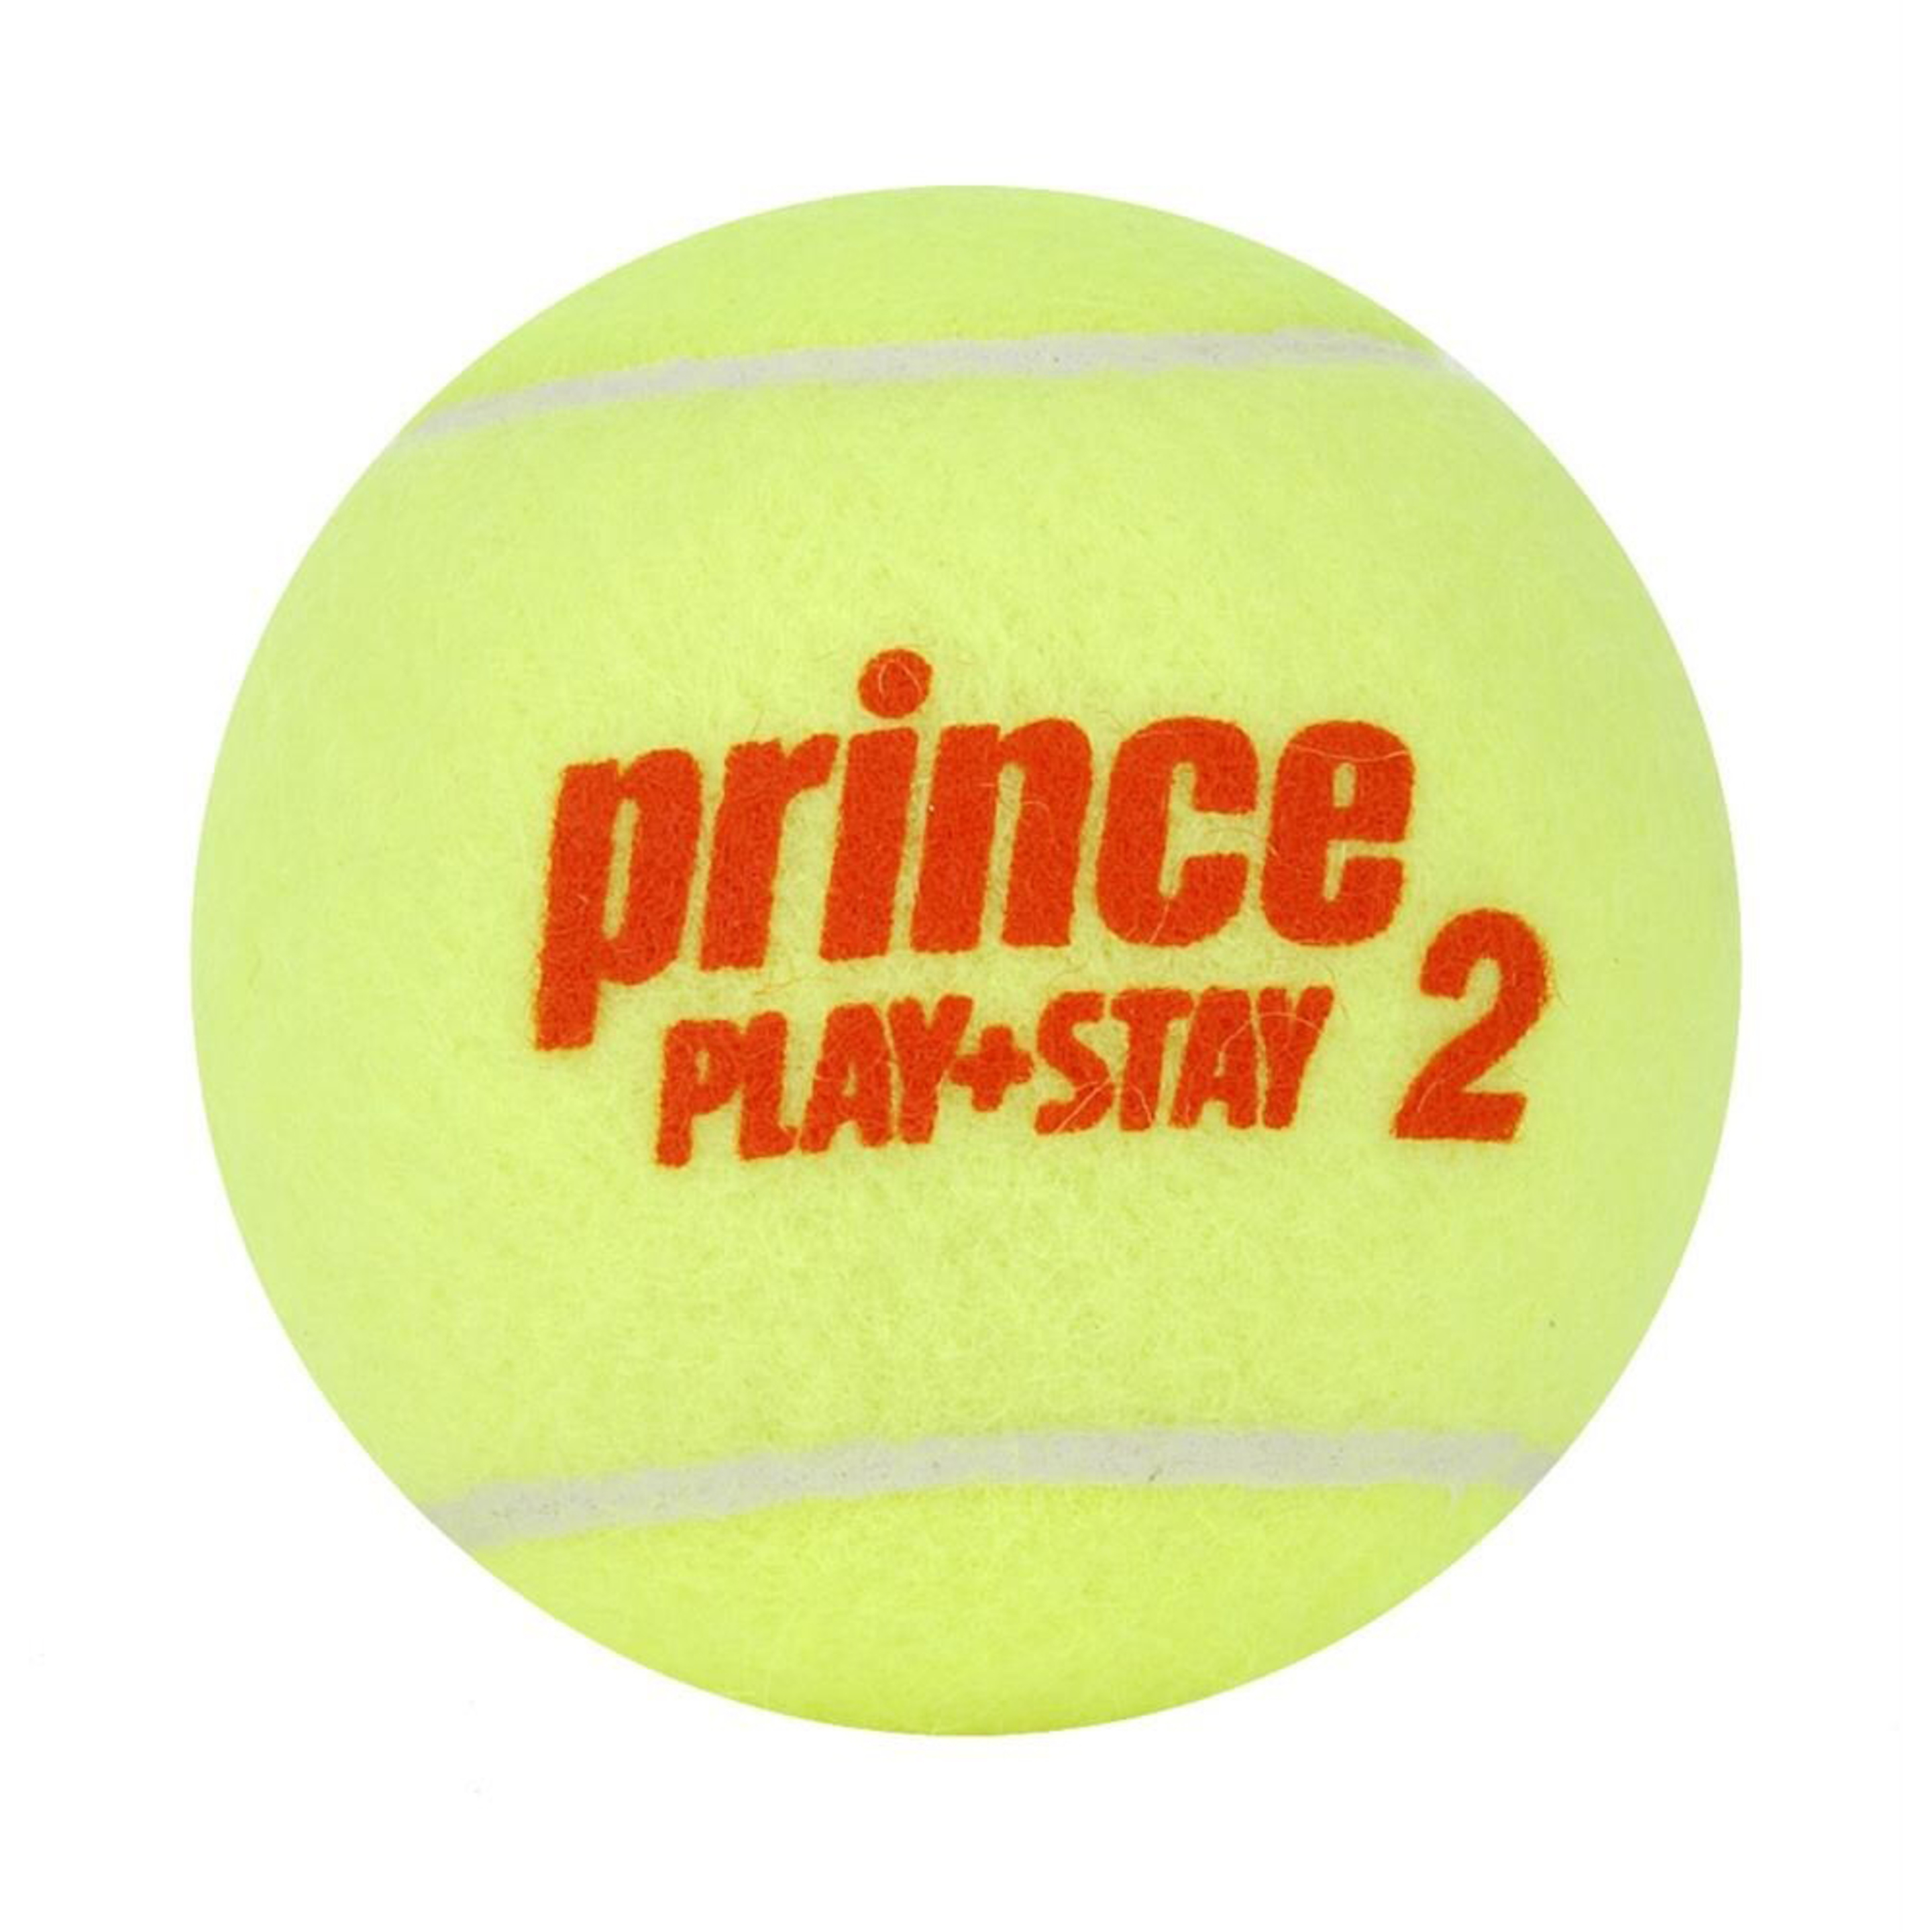 Caixa Com 24 Latas De 3 Bolas De Padel Prince Play & Stay Stage 2 - amarillo - 